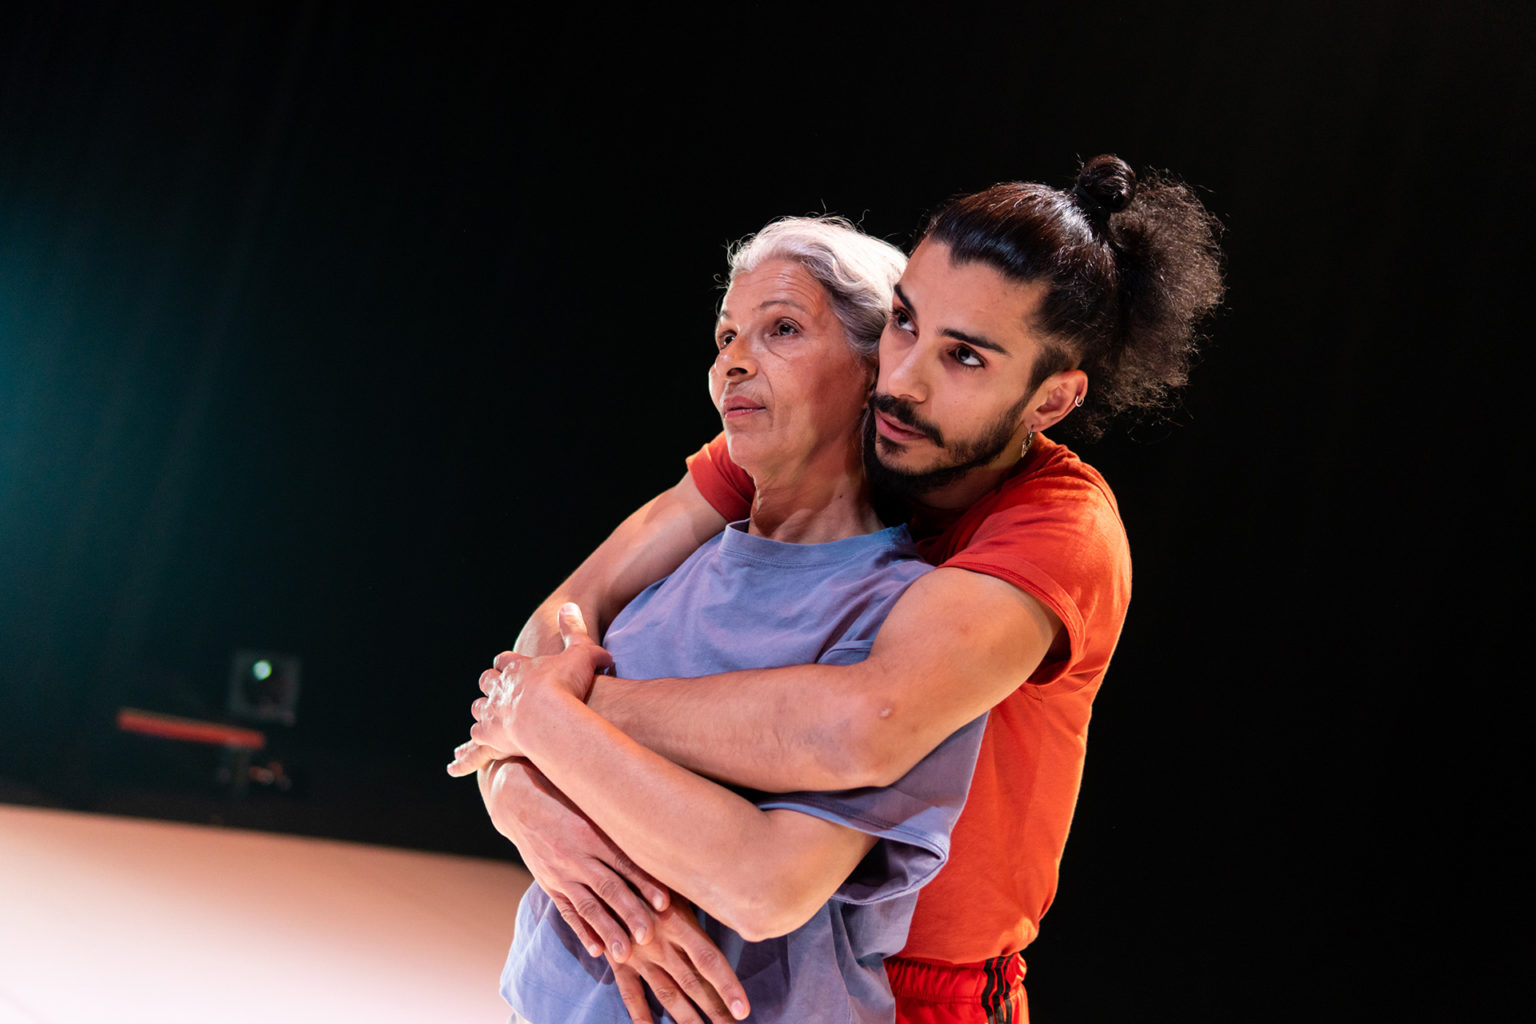 Le danseur Mohamed Toukabri est sur scène avec sa maman qu'il tient dans ses bras. il porte un t-shirt de couleur orange et sa maman prte un t-shirt de couleur mauve.